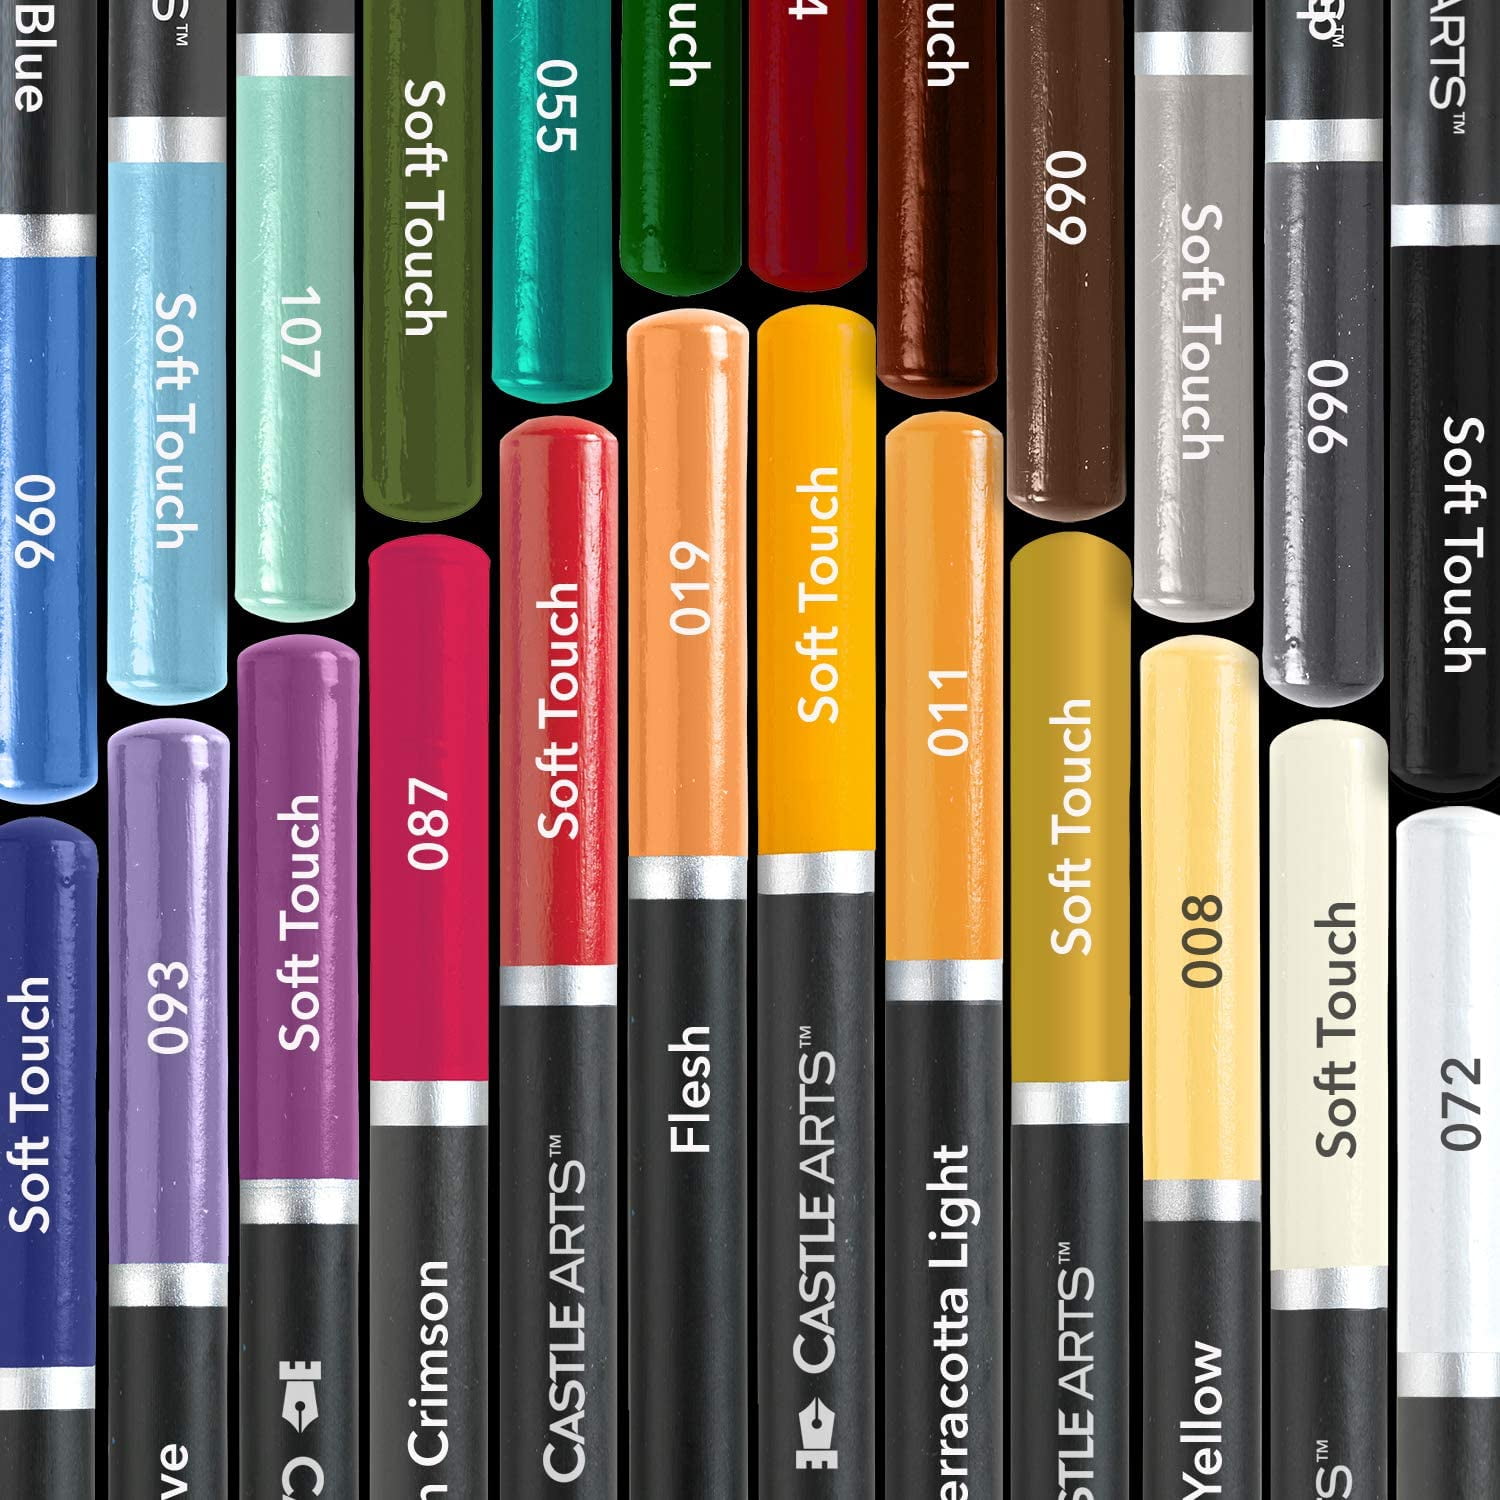 BundelkhandSports Color Set - Art colors